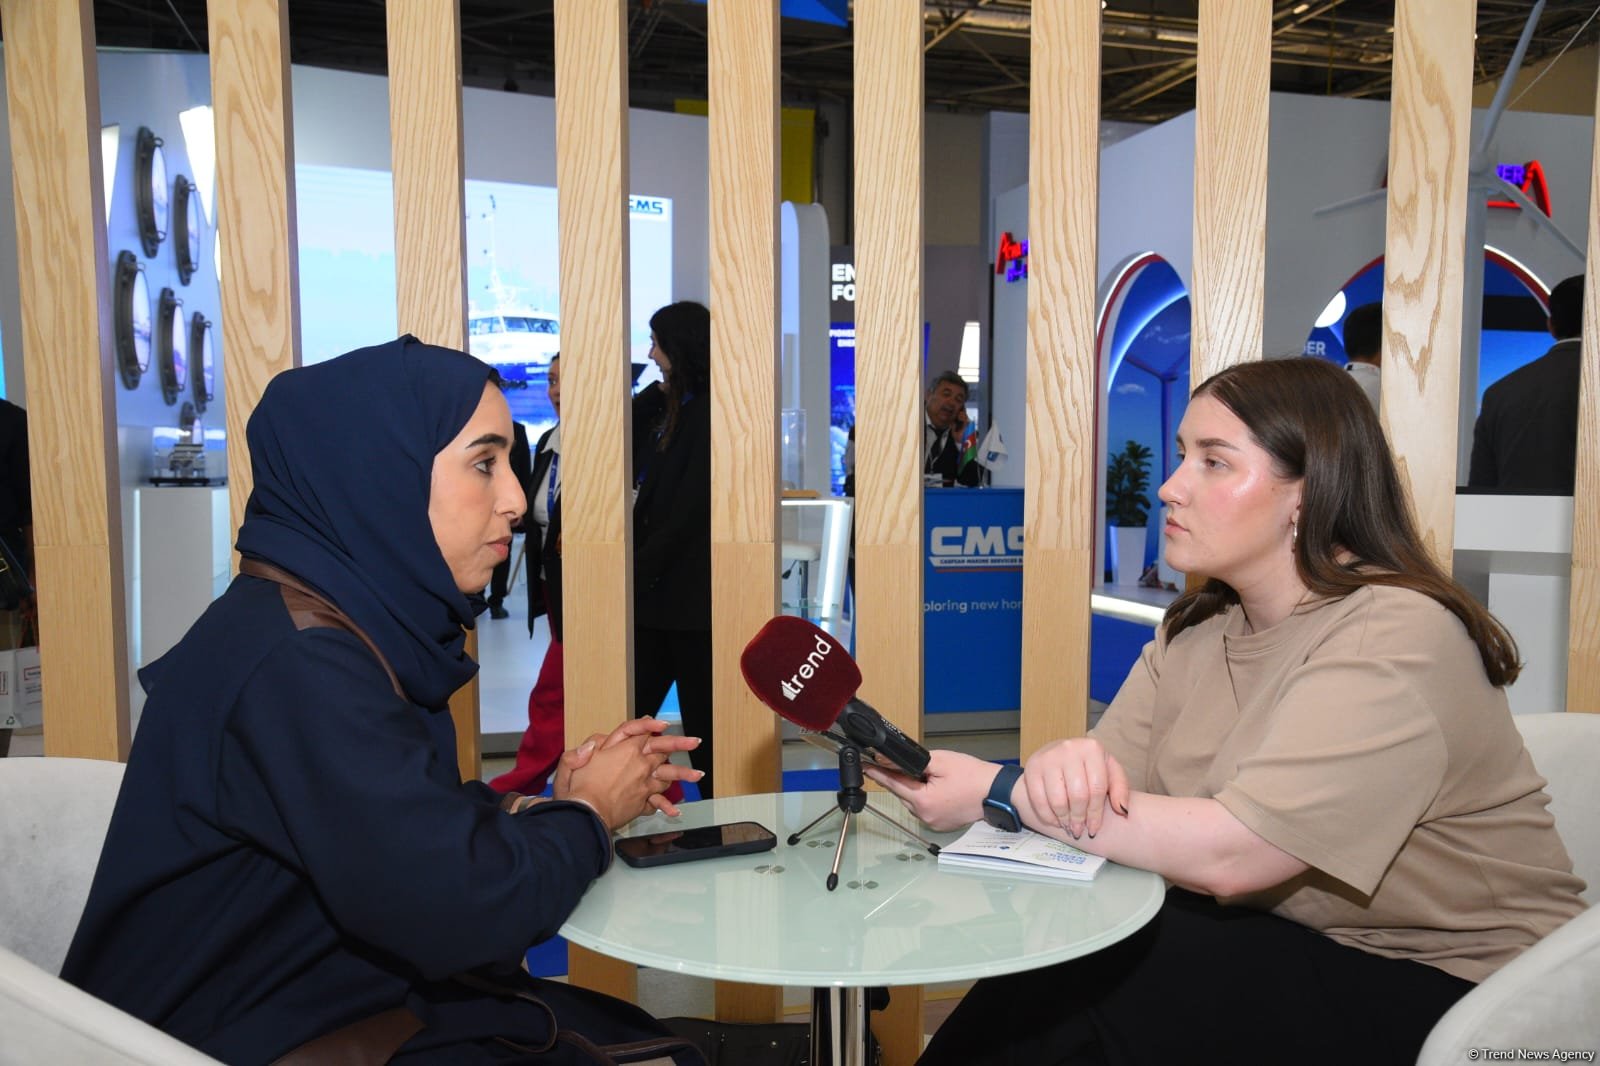 Masdar окажет поддержку успешному проведению COP29 в Азербайджане - Марьям Аль Мазруи (Эксклюзивное интервью) (ФОТО)